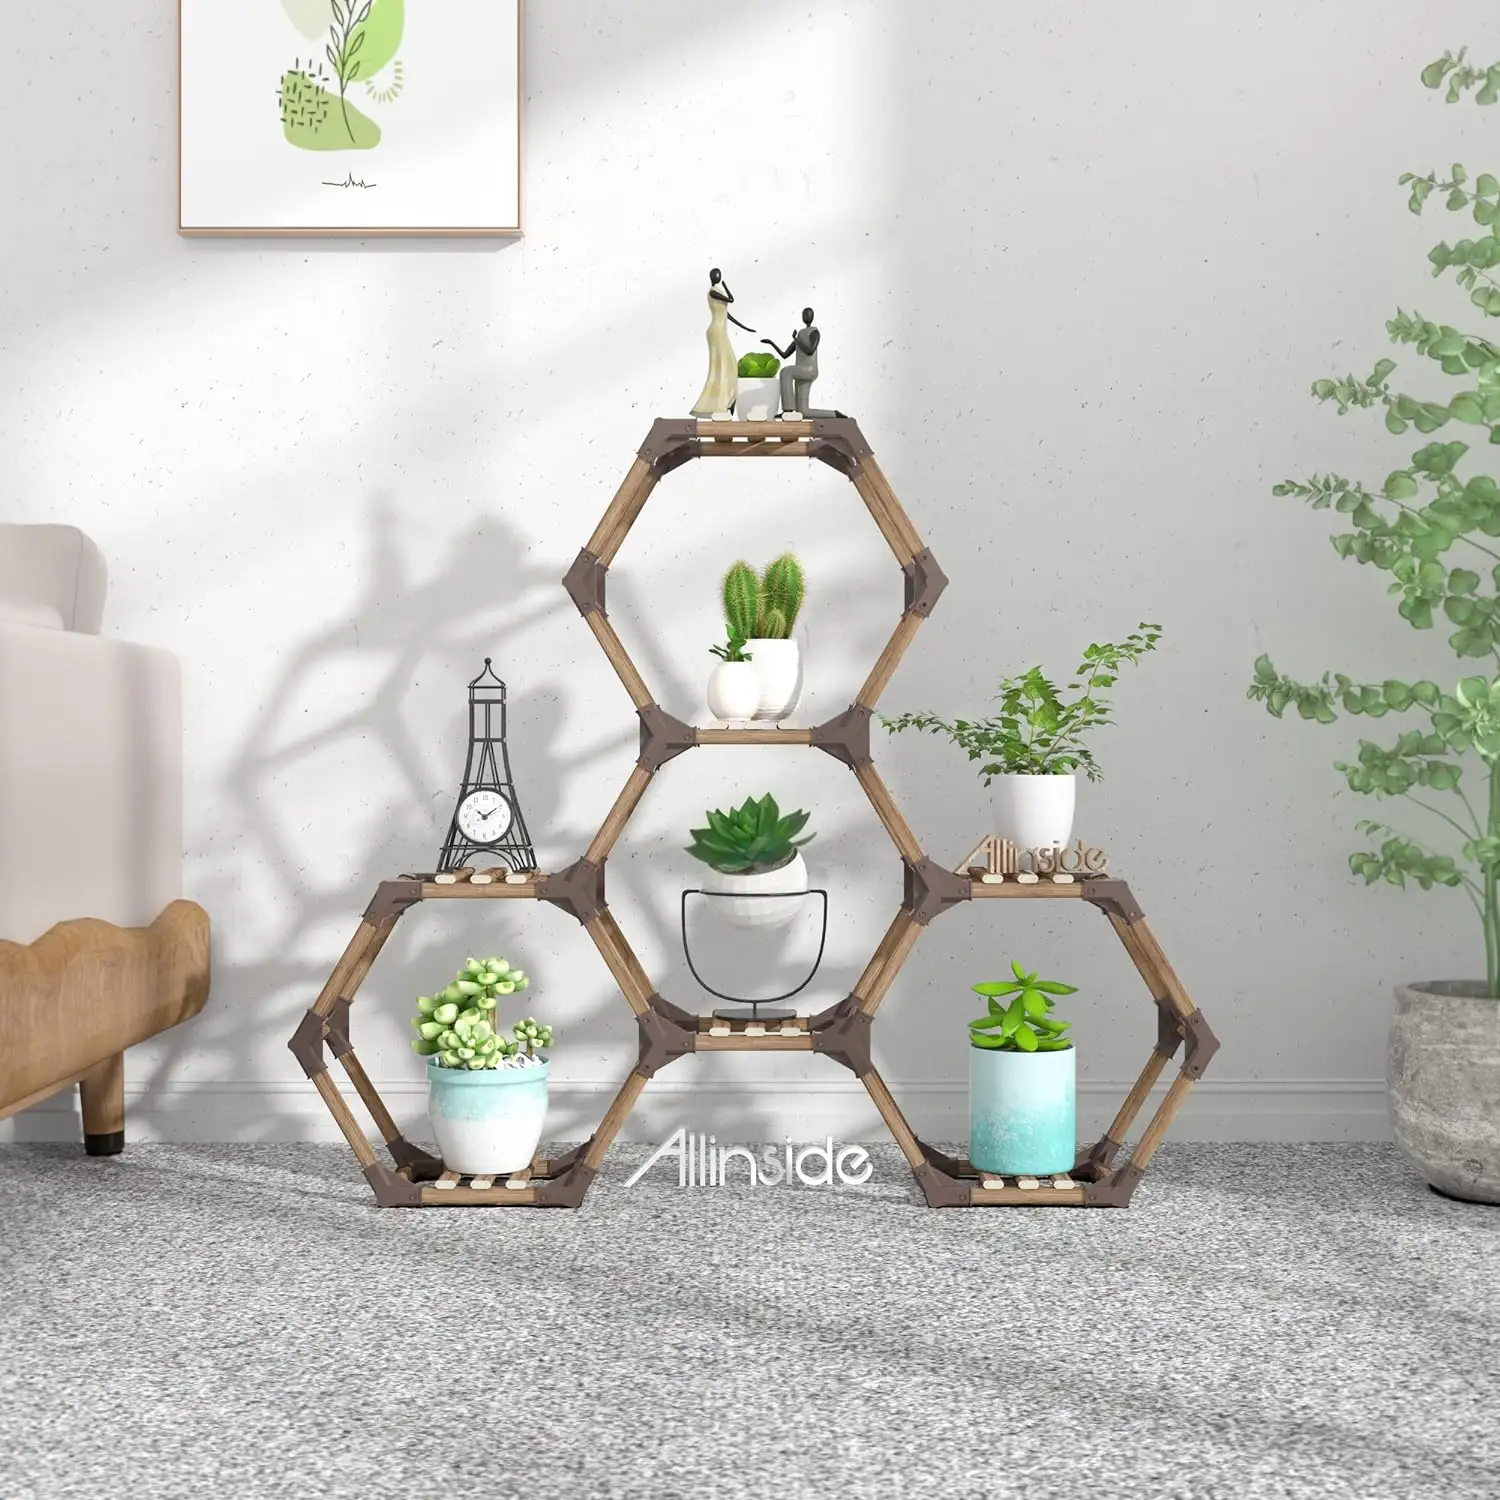 Suporte hexagonal para plantas, suporte para vasos de flores, prateleira para vasos de flores DIY, para uso interno e externo